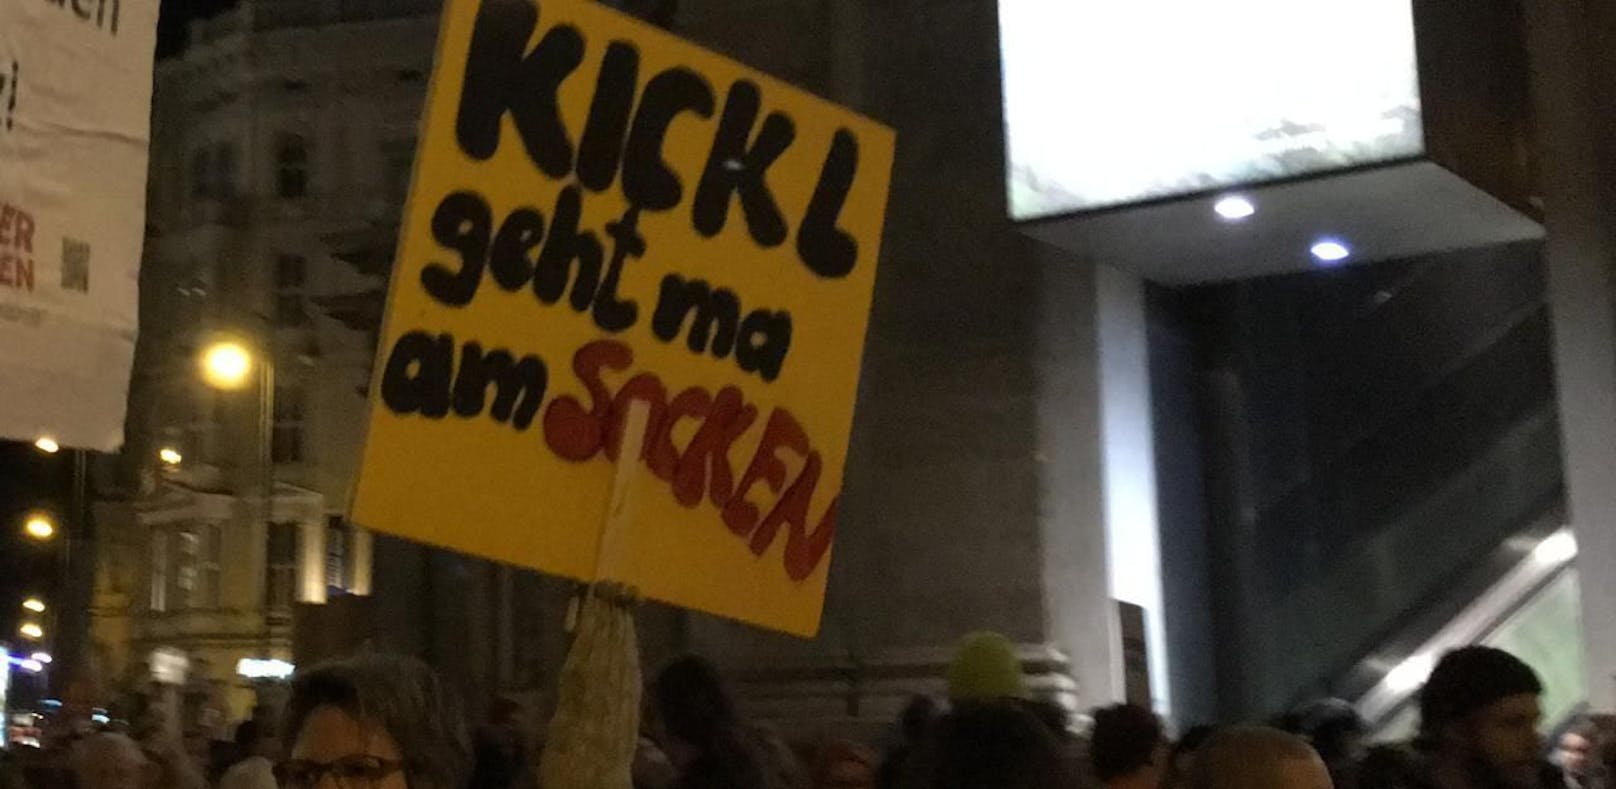 Am Mittwoch wird gegen Kickl demonstriert. Hier ein Bild der letzten Donnerstagsdemo vom 1. November.